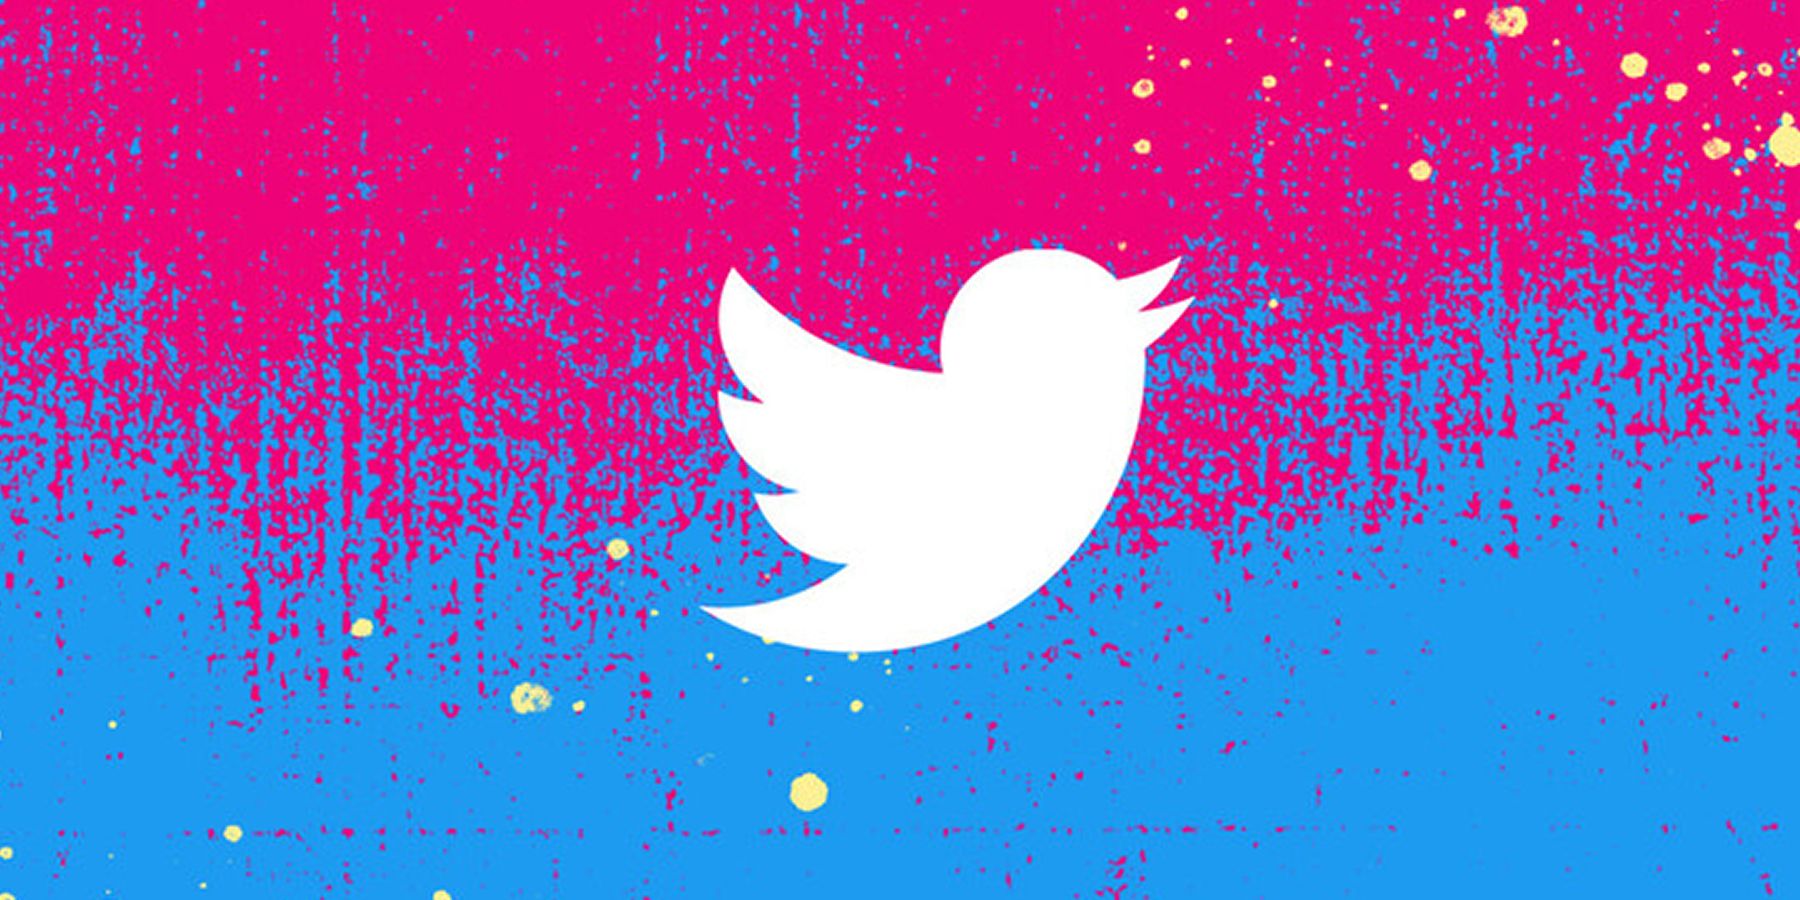 twitter-create-banner-grunge-pink-blue